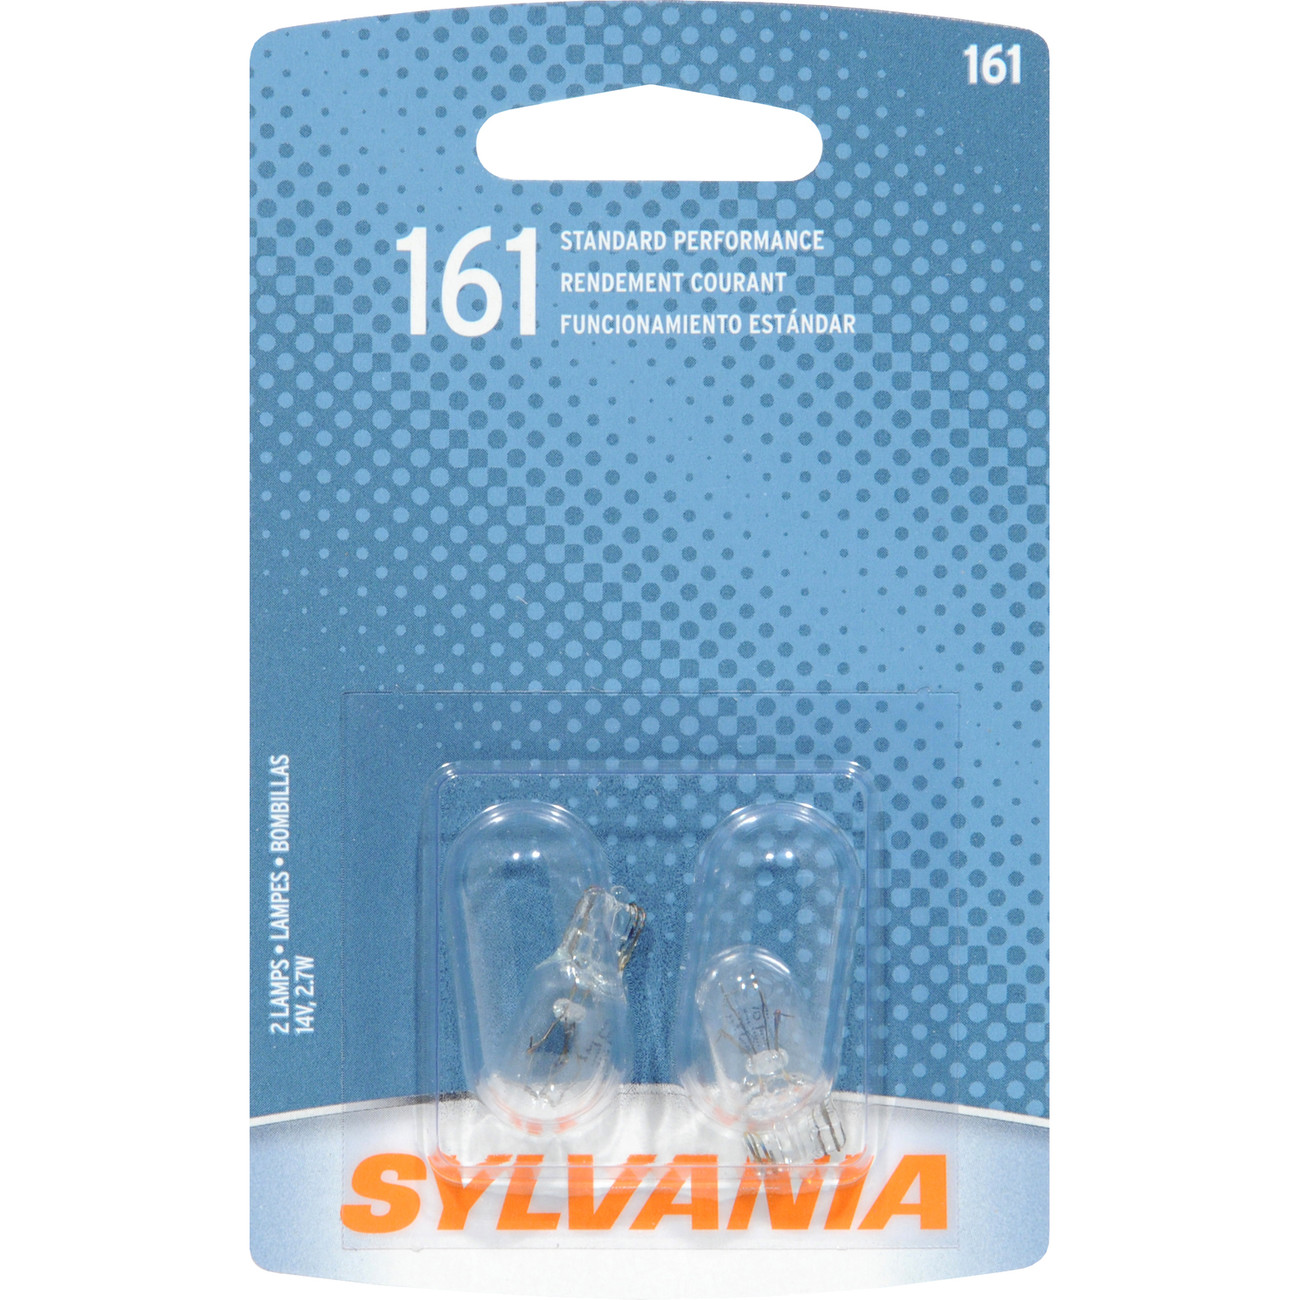 SYLVANIA RETAIL PACKS - Blister Pack Twin Seat Belt Light Bulb - SYR 161.BP2